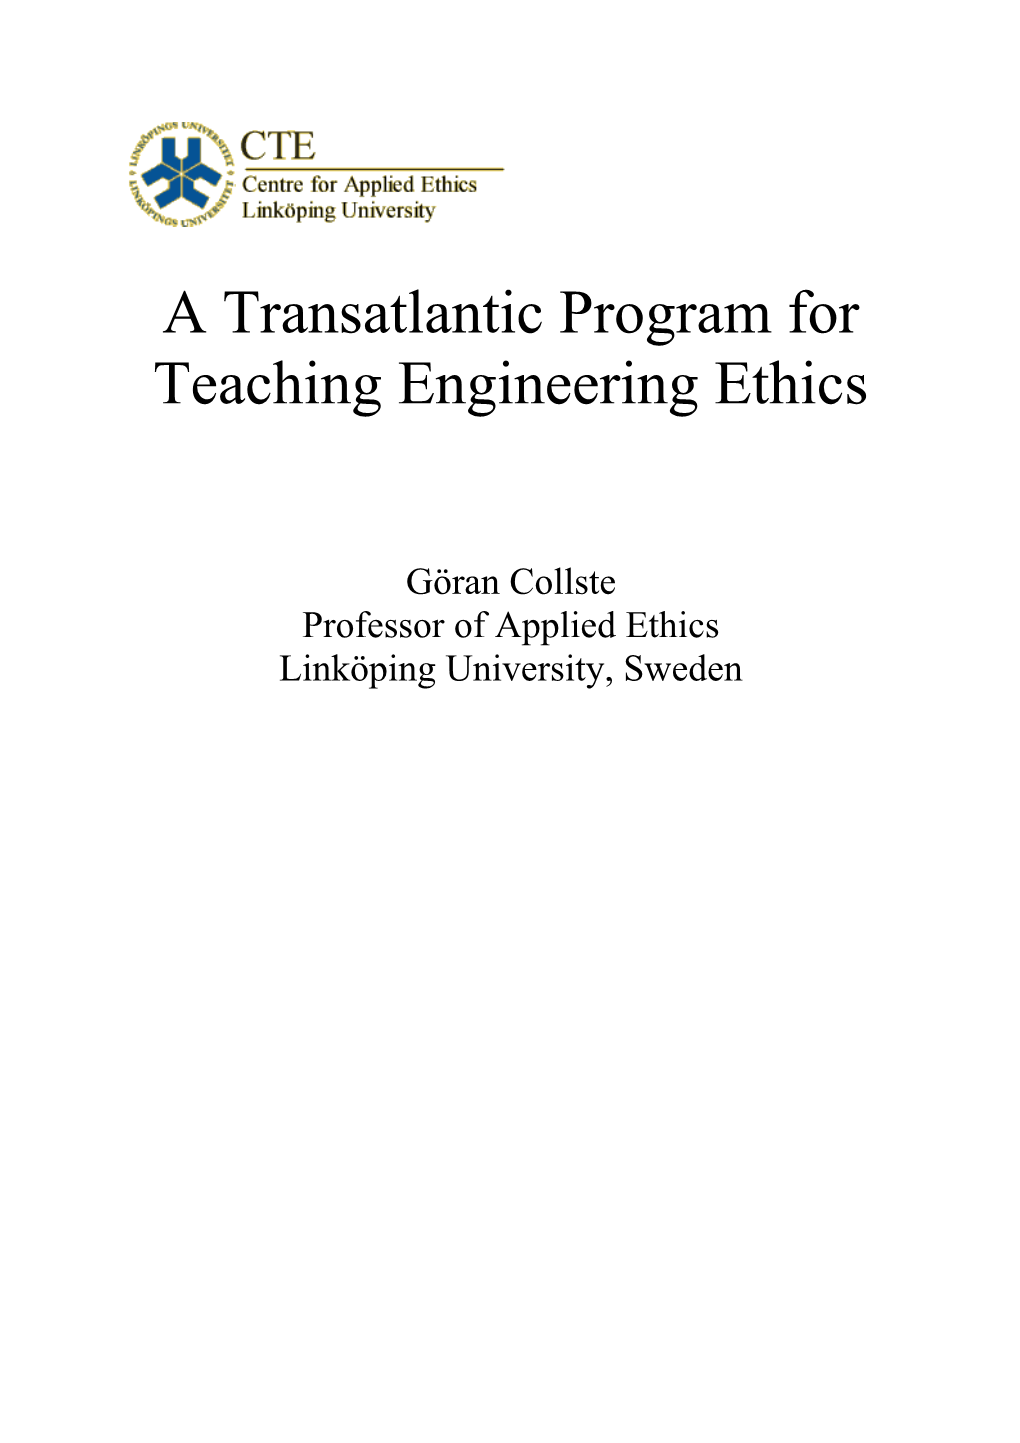 A Transatlantic Program for Teaching Engineering Ethics